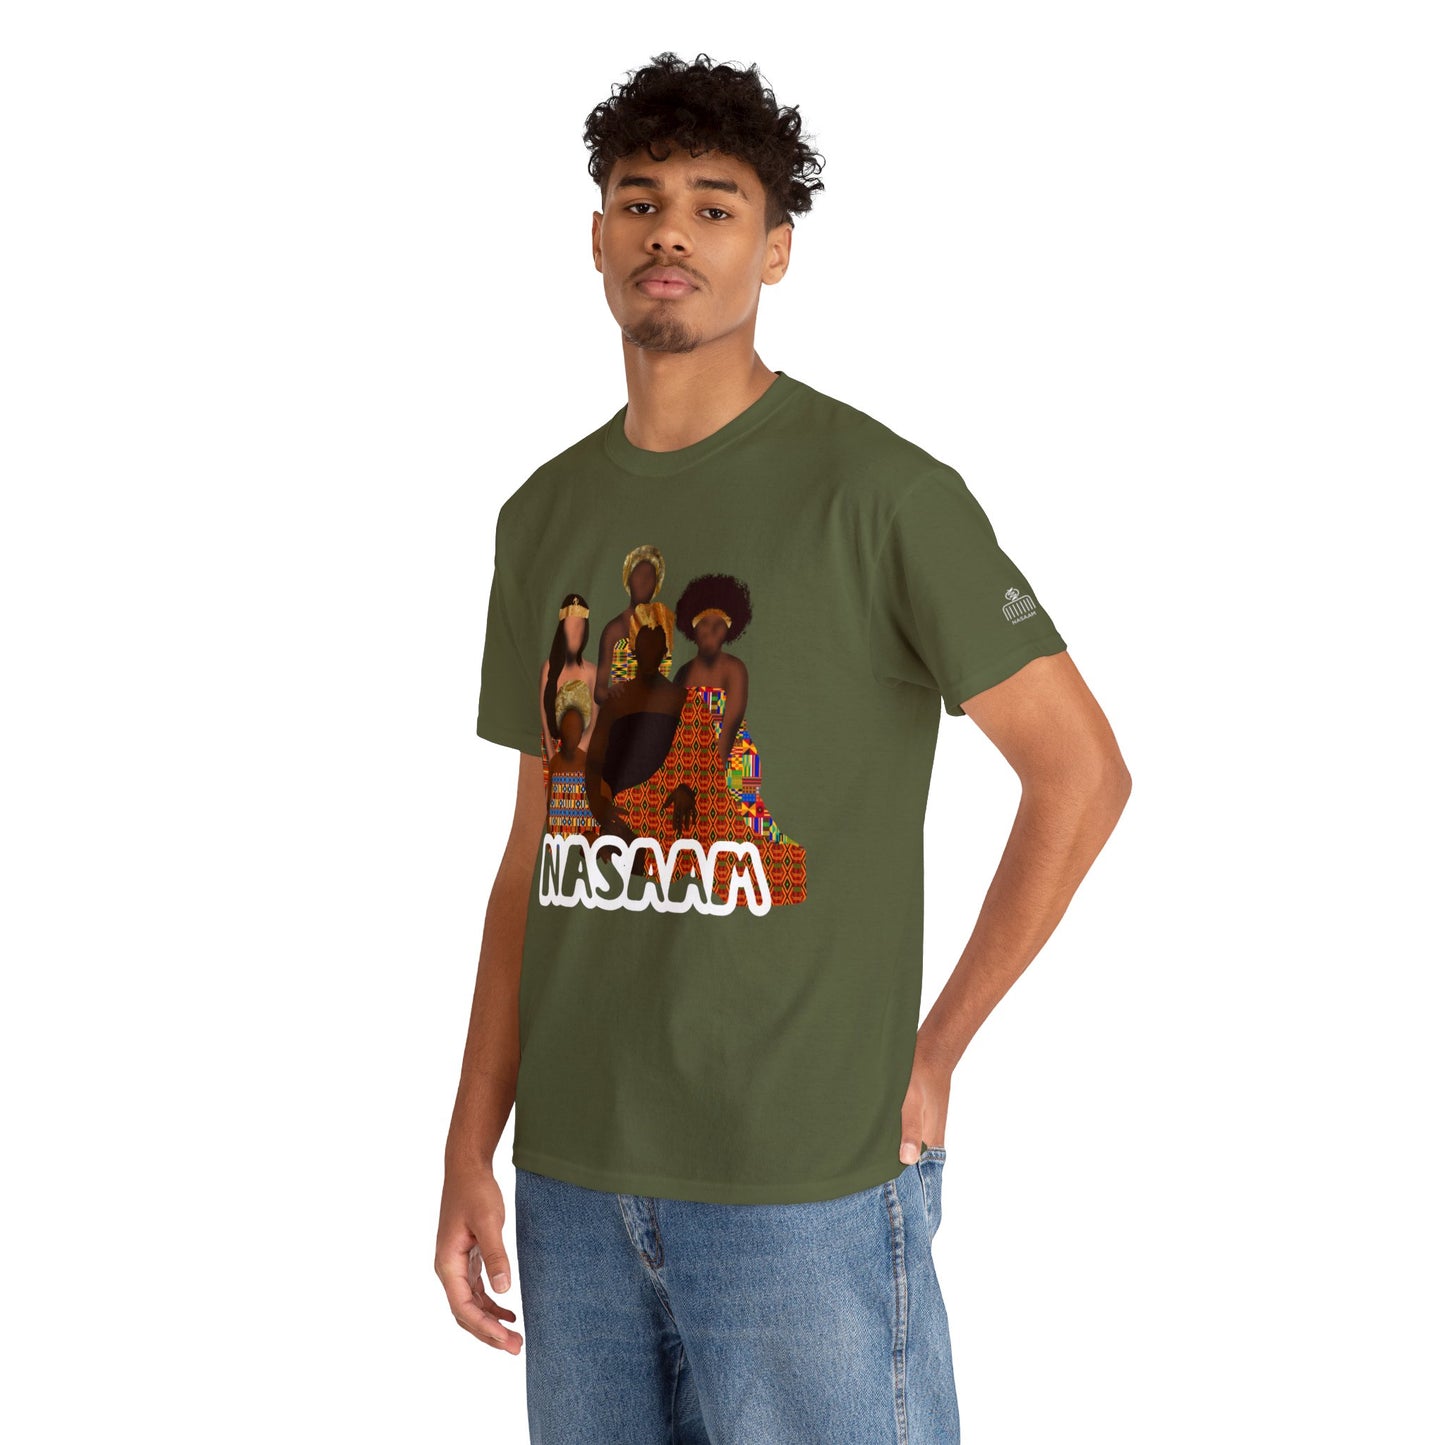 Ahemaa T-shirt